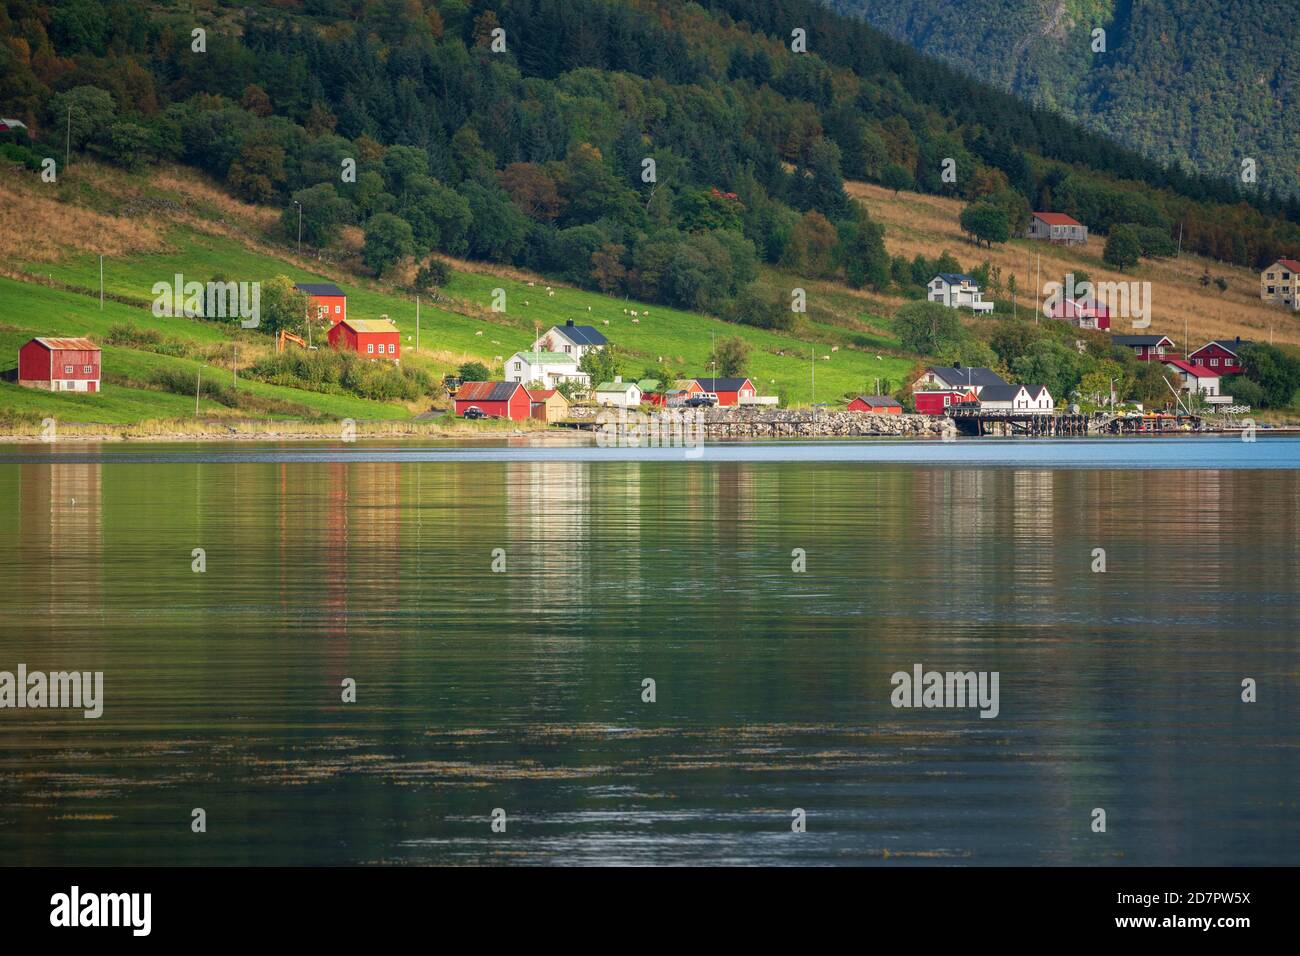 Piccolo insediamento su un fiordo, dietro montagne con pendii boscosi, Dalsgrenda, Nordland, Norvegia Foto Stock